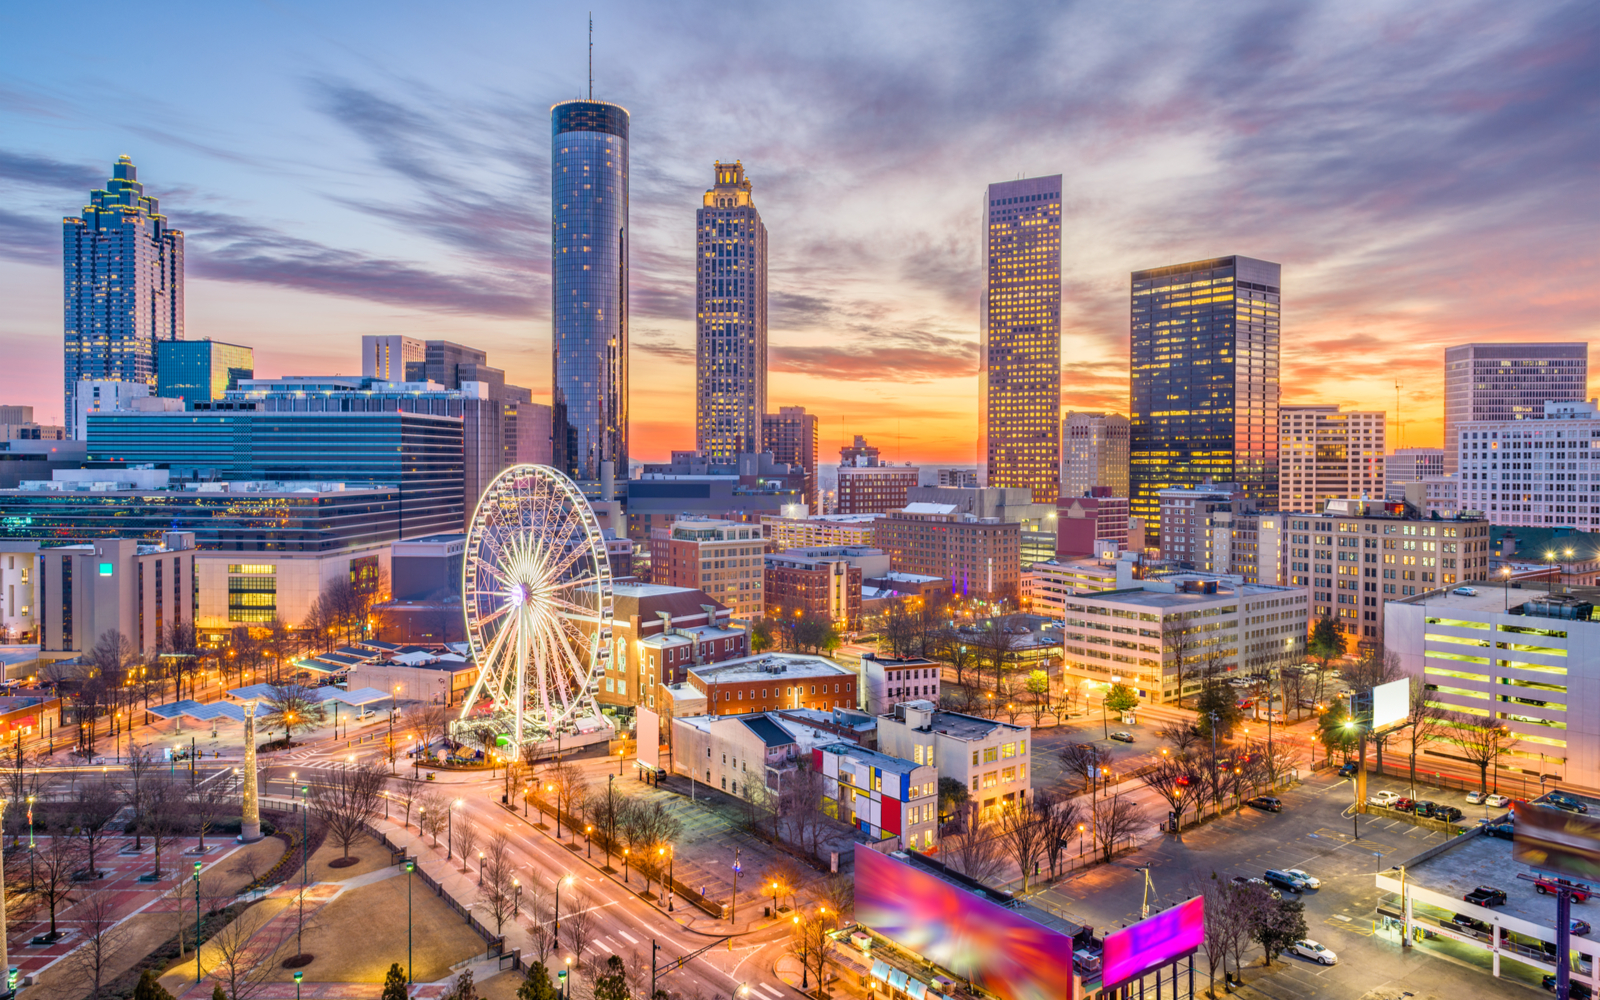 The 15 Best Hotels in Atlanta in 2023